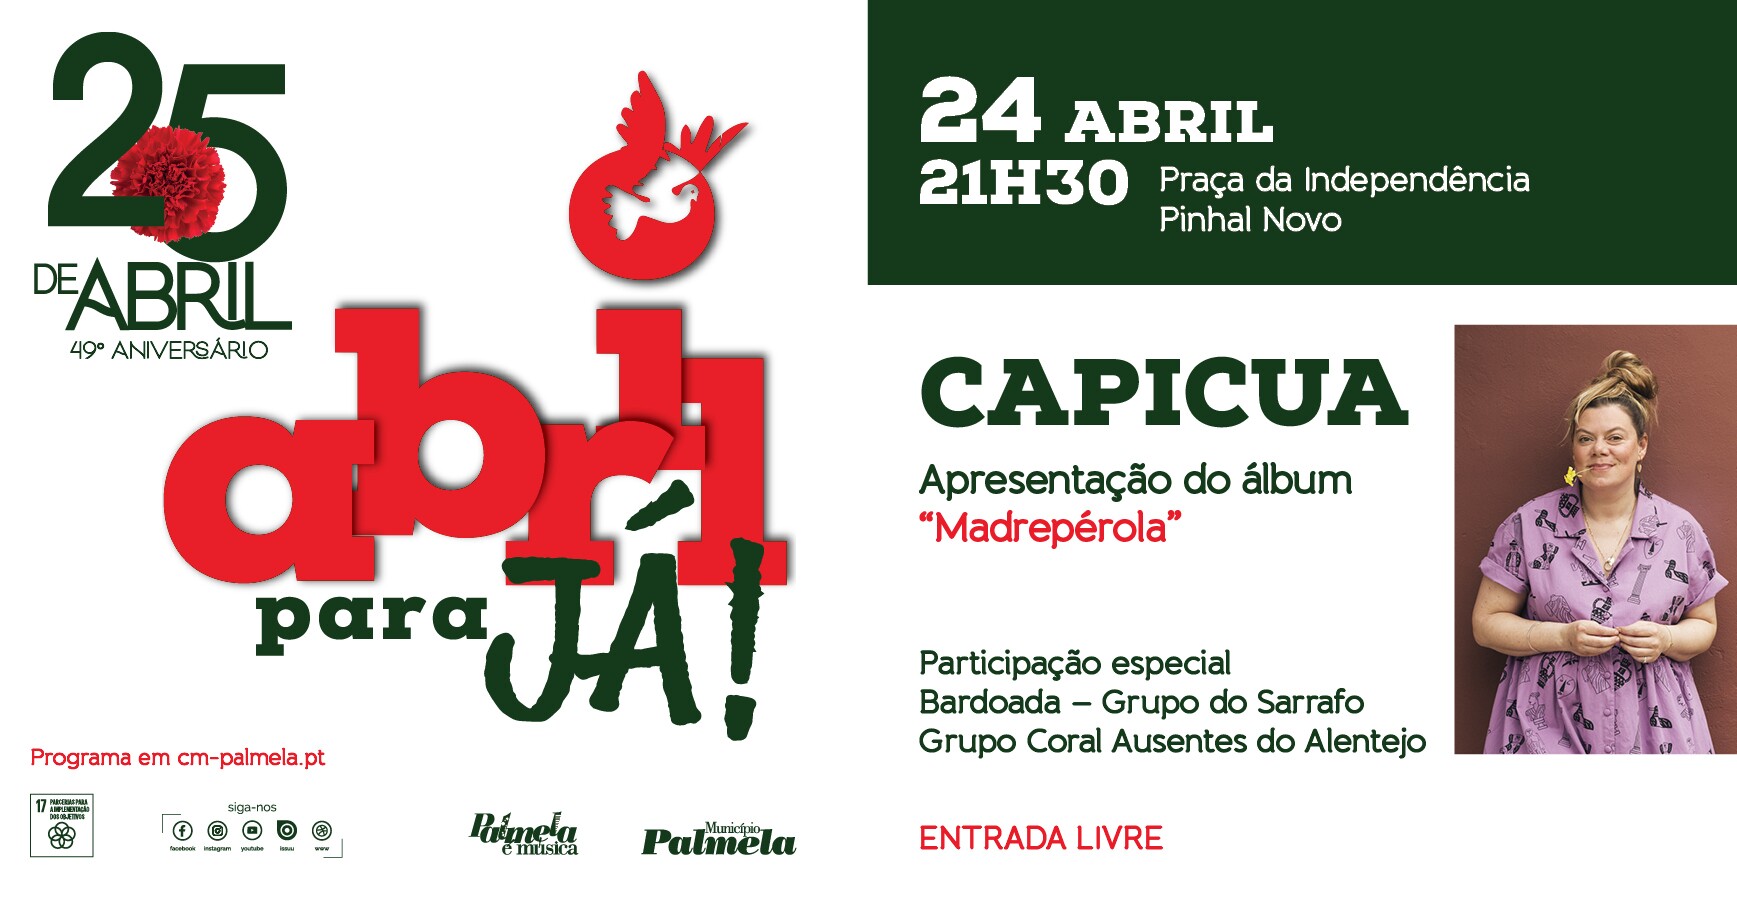 25 de Abril: Capicua vai ao Pinhal Novo com “Madrepérola”